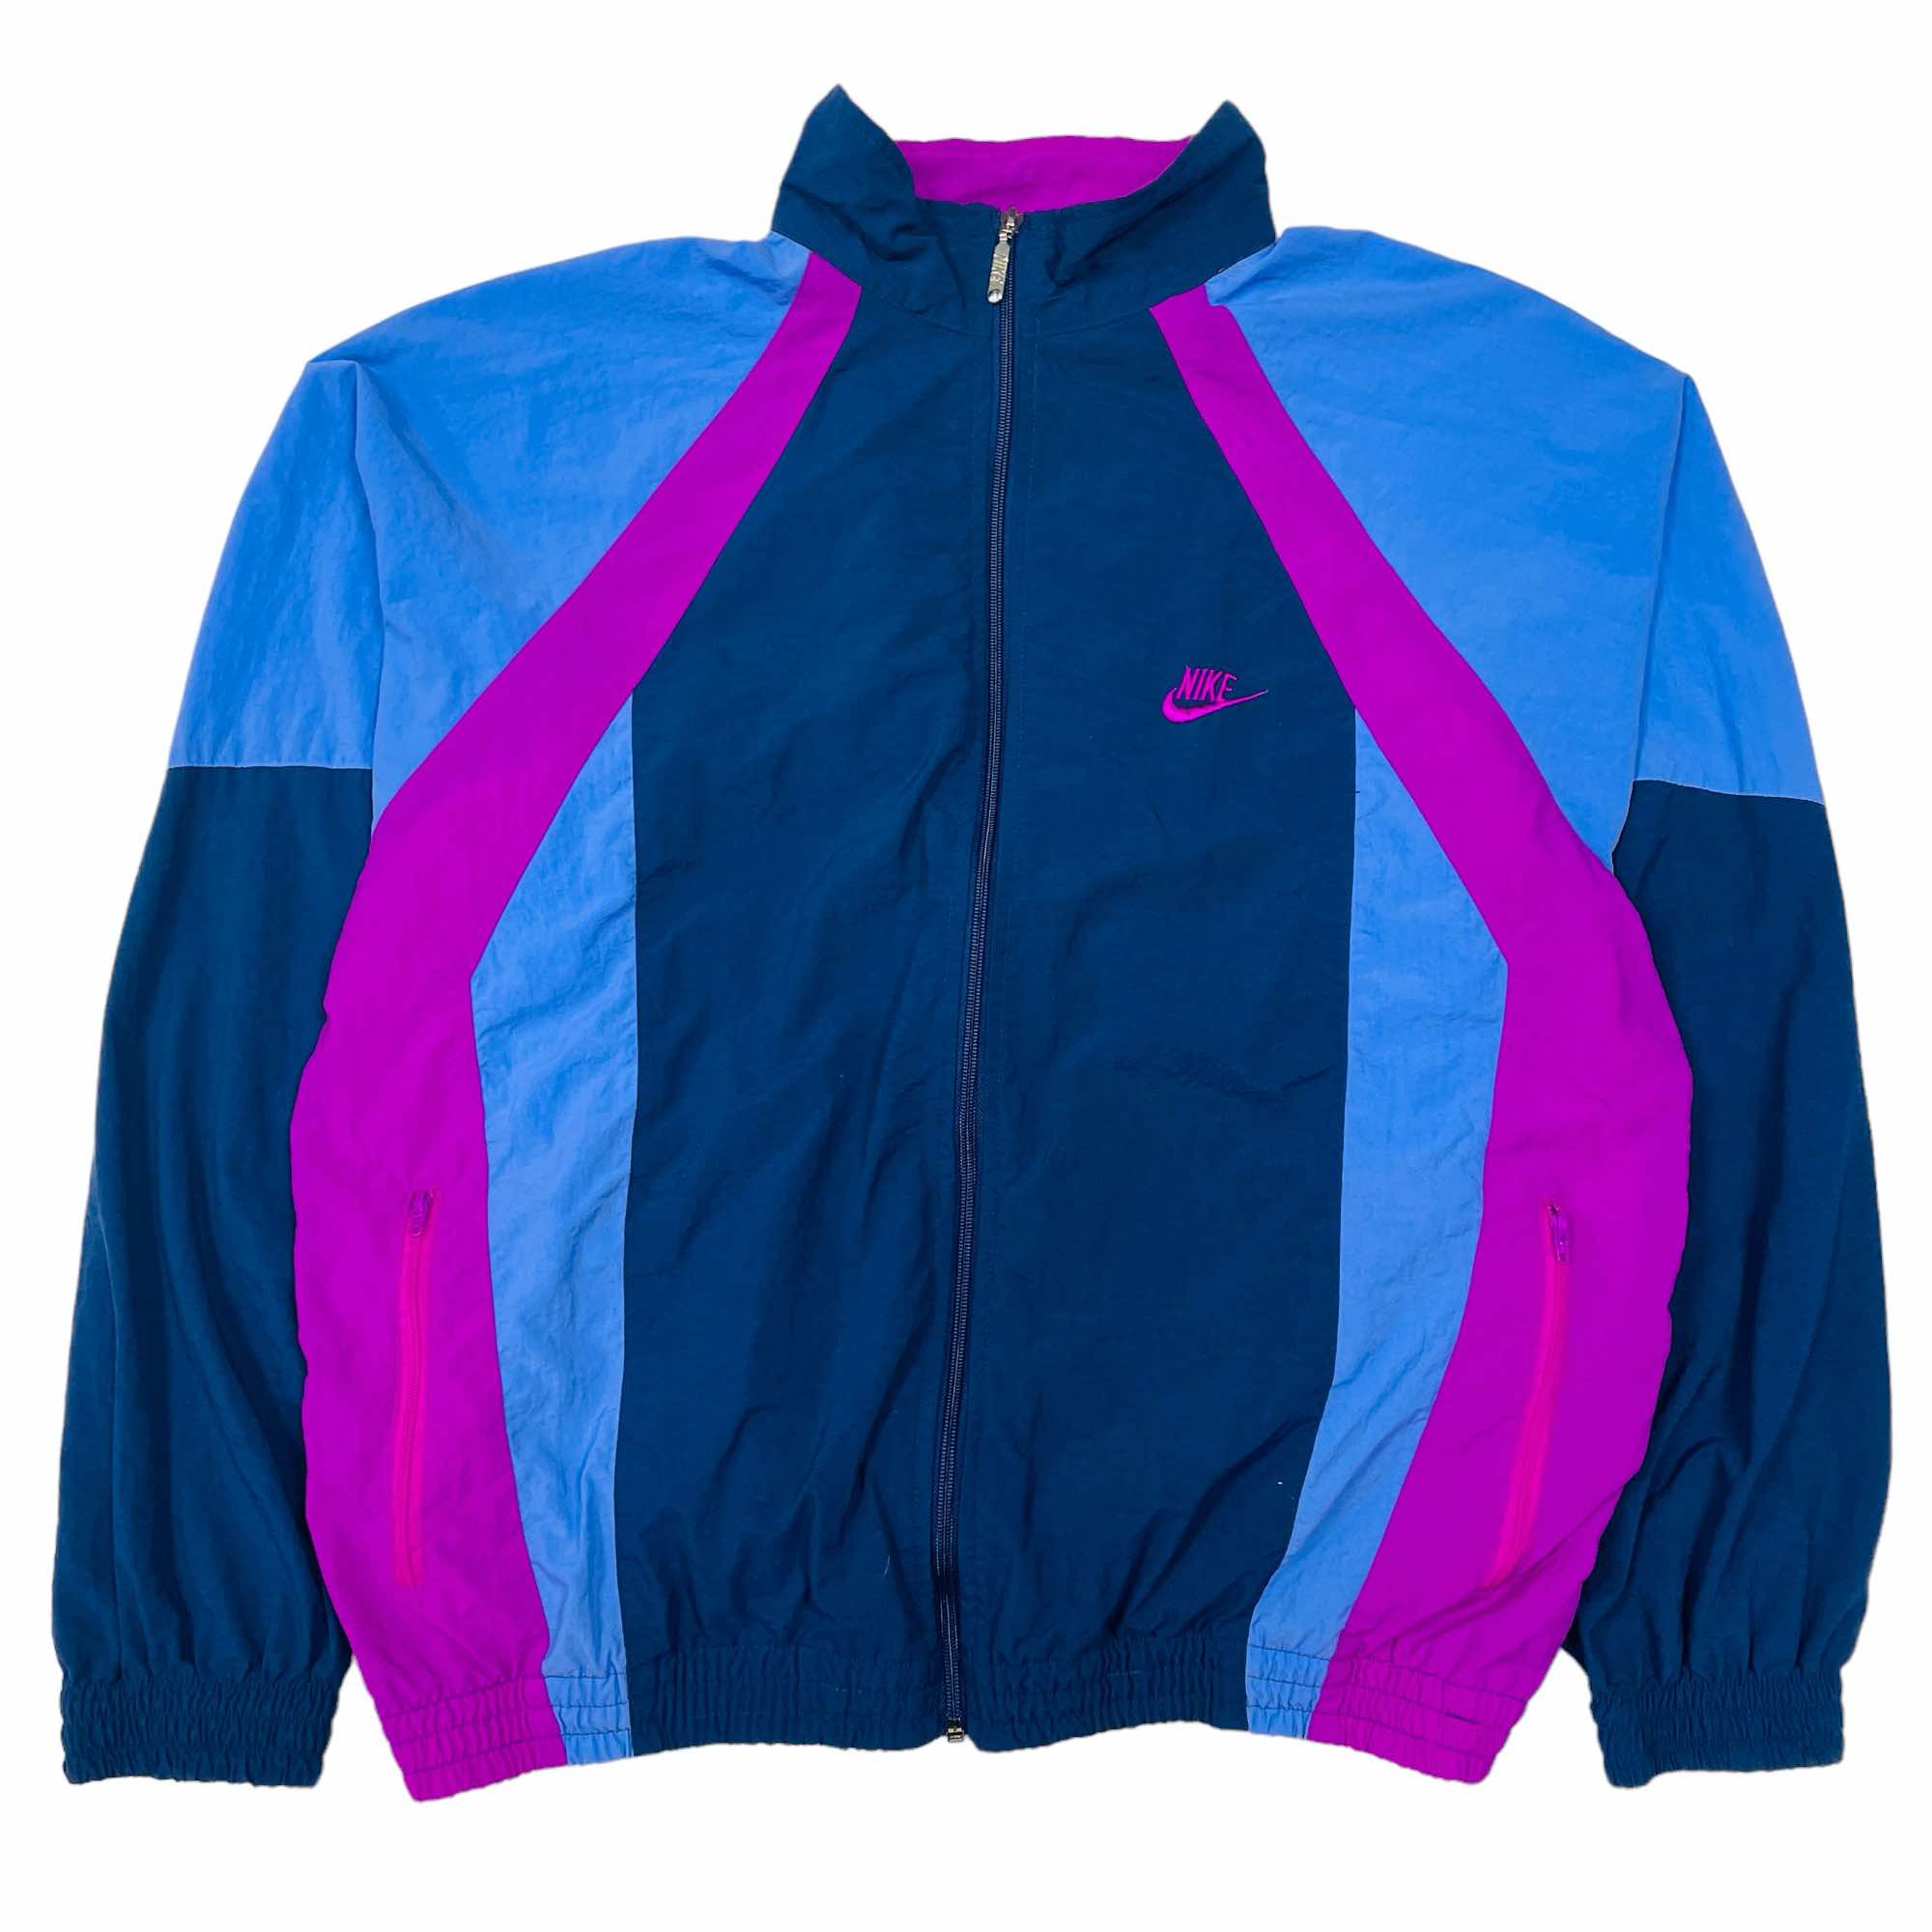 90s Nike Jacket - Large